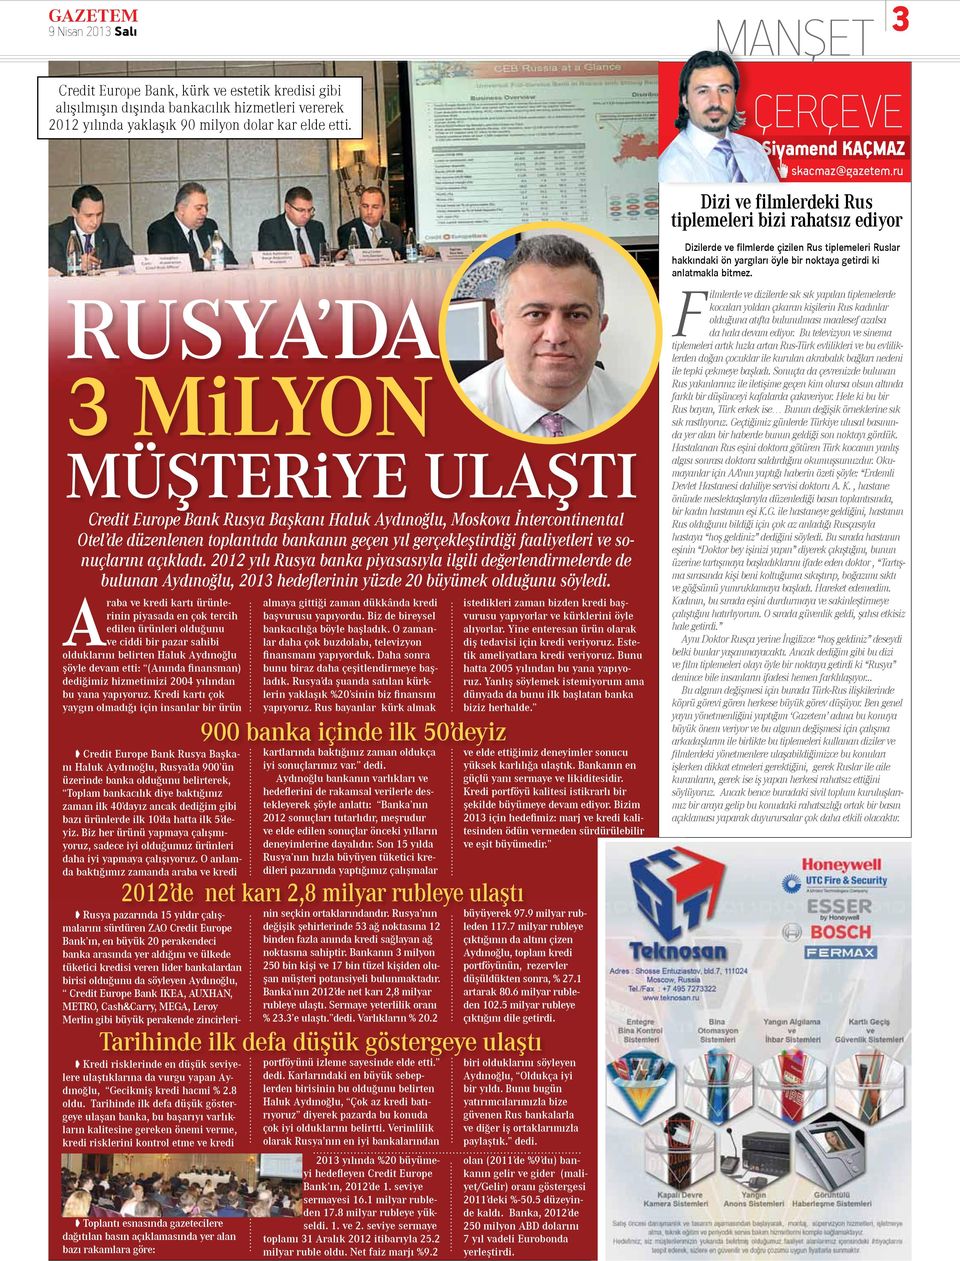 sonuçlarını açıkladı. 2012 yılı Rusya banka piyasasıyla ilgili değerlendirmelerde de bulunan Aydınoğlu, 2013 hedeflerinin yüzde 20 büyümek olduğunu söyledi.